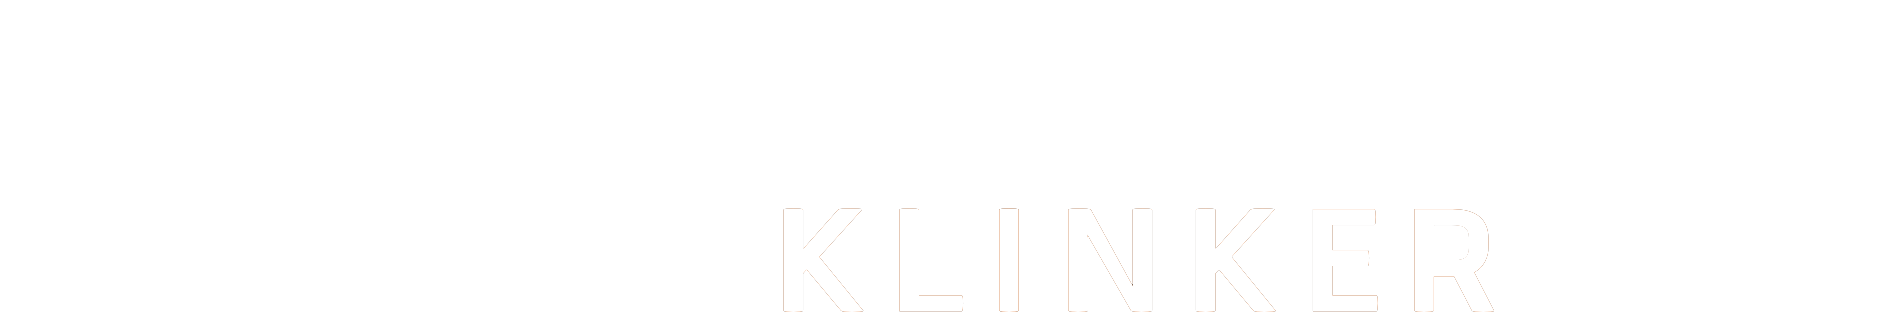 ein Logo für eine Firma namens Herold Klinker Bau